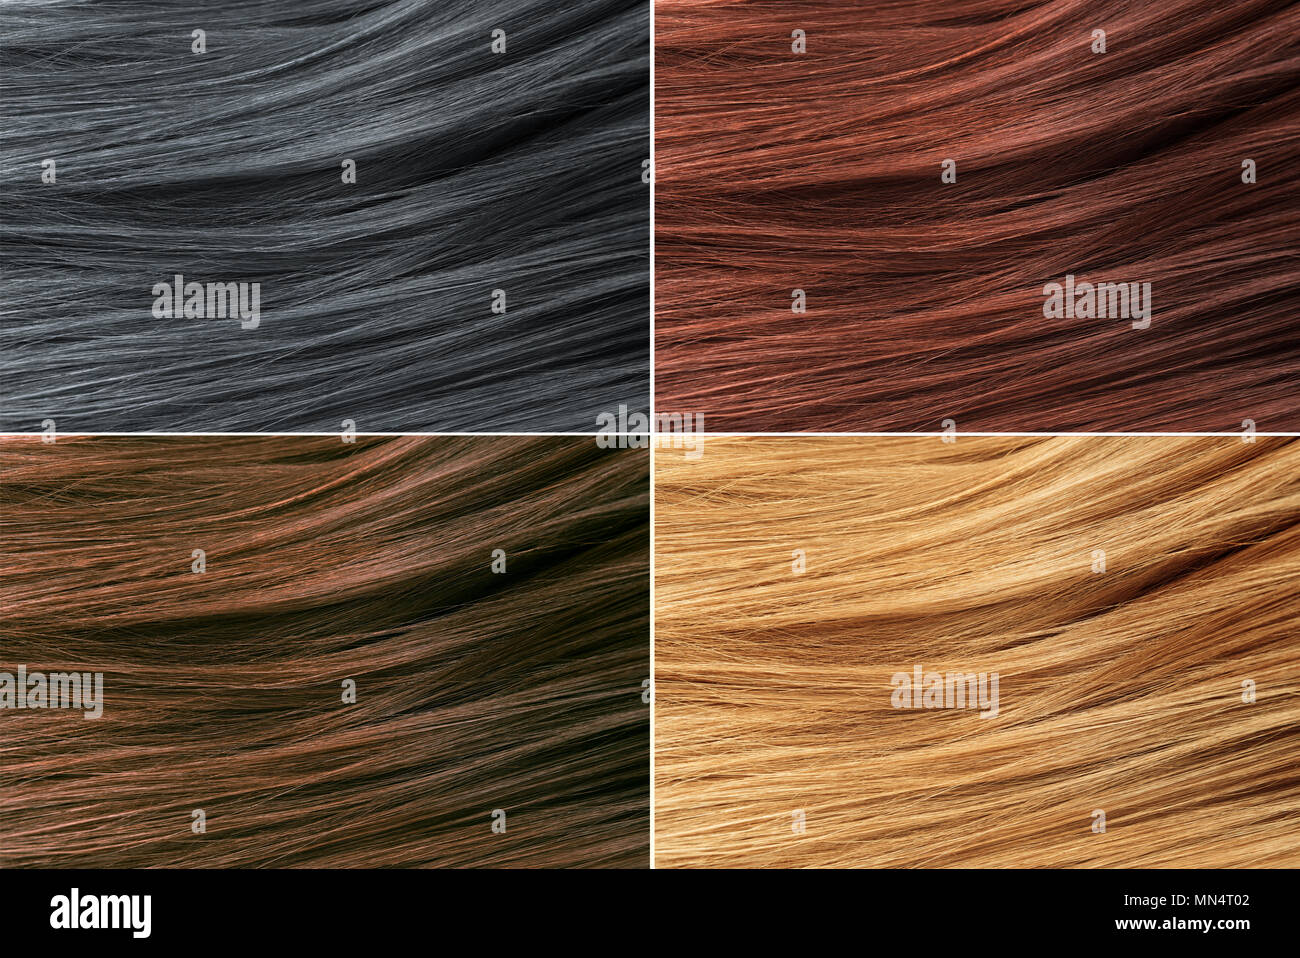 Colori dei capelli immagini e fotografie stock ad alta risoluzione - Alamy